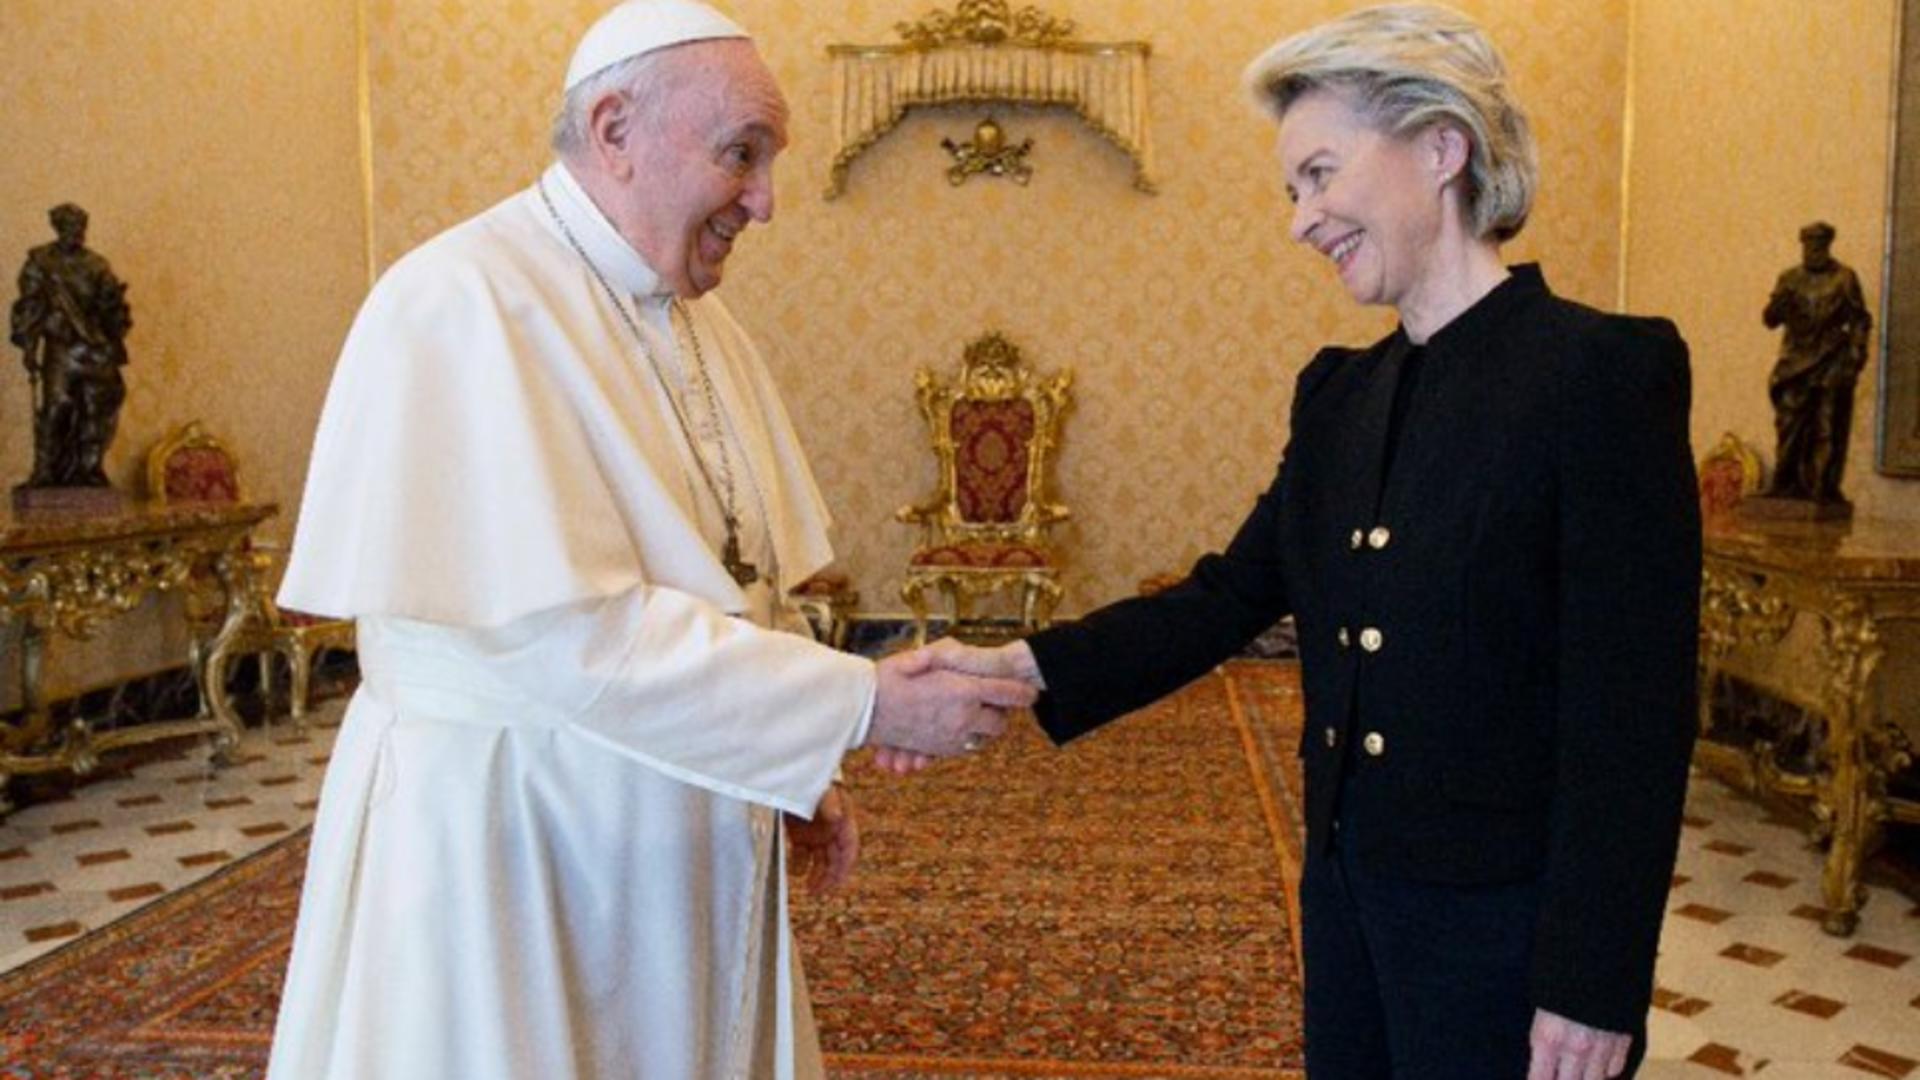 Ce a discutat Ursula von der Leyen cu Papa Francisc, la Vatican - Cadourile oferite după prima audiență Foto: VaticanNews.va